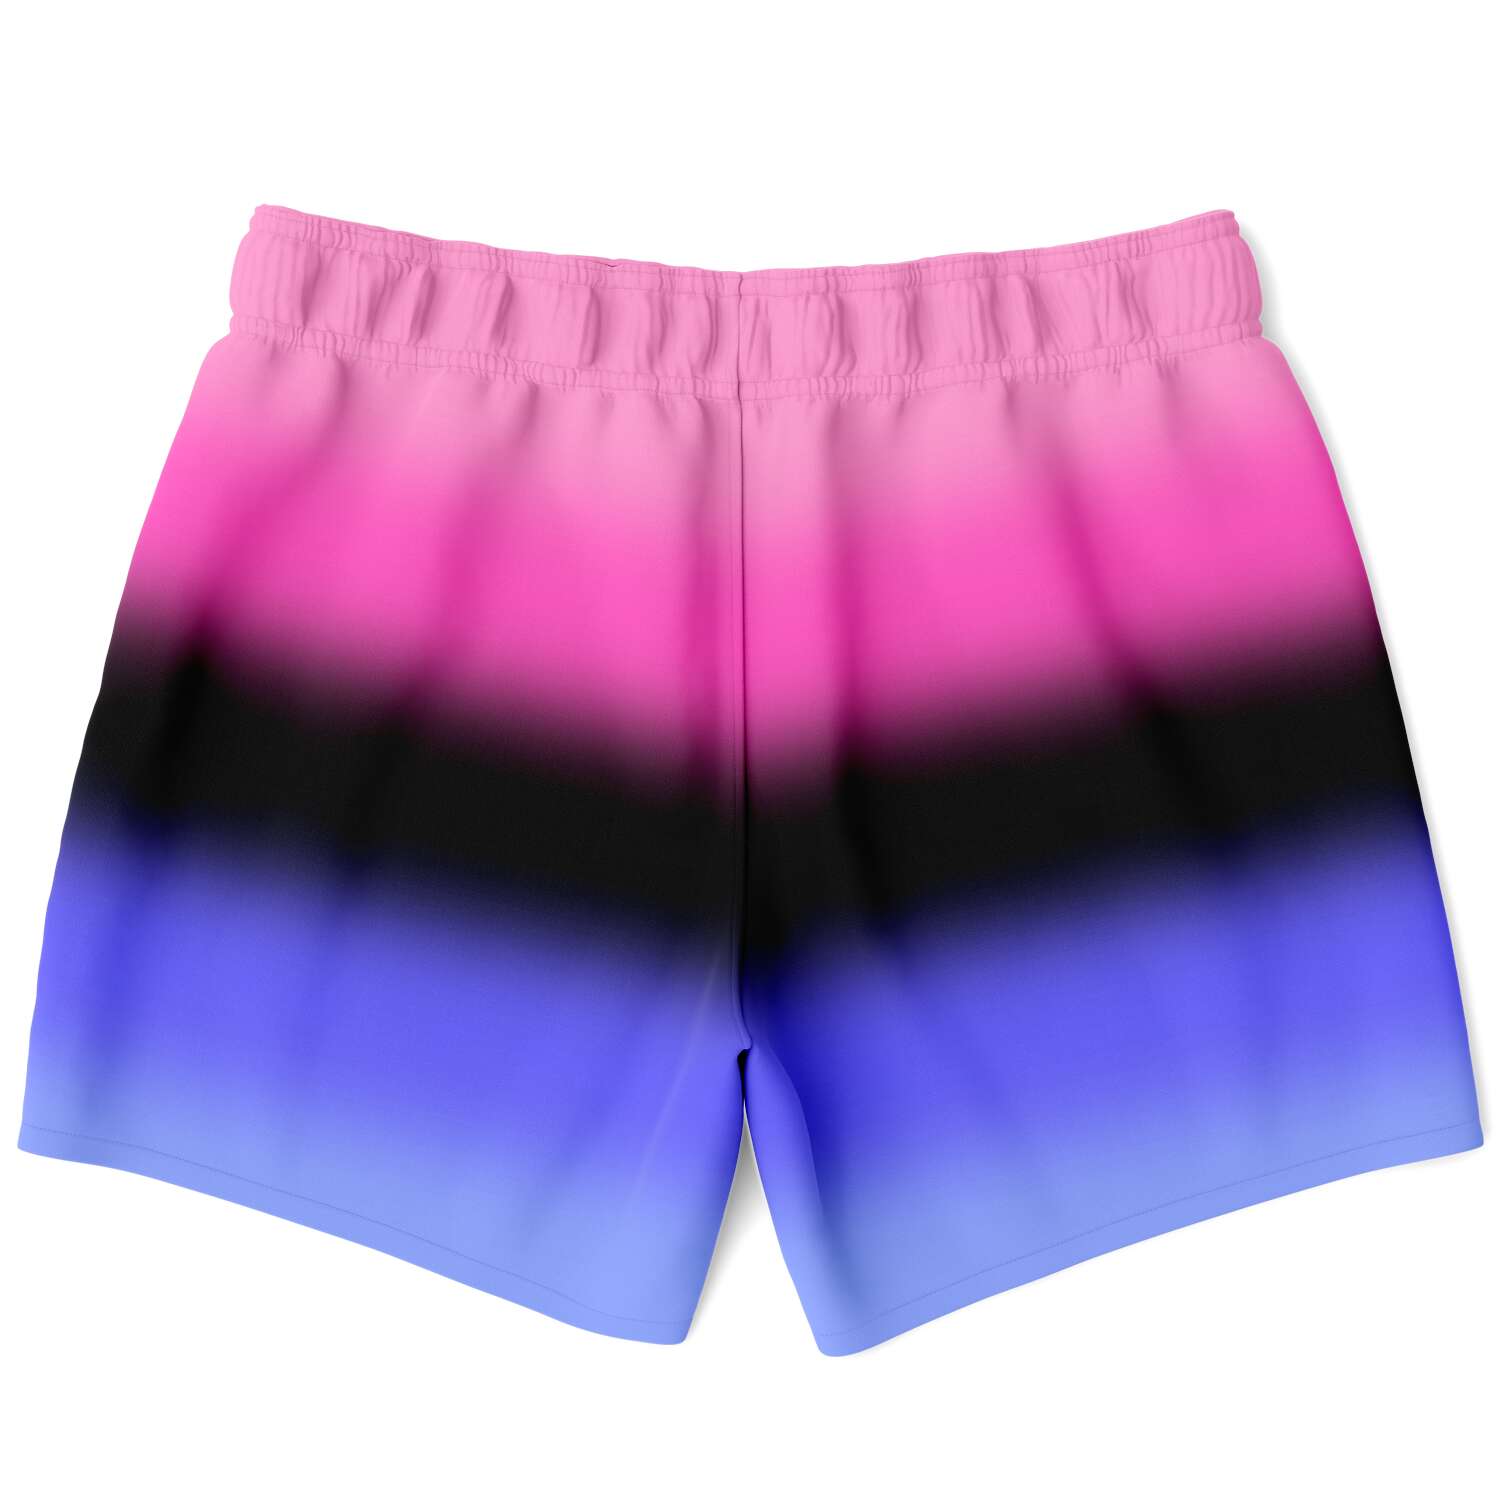 Omnisexual Pride Ombre Swim Shorts Swim Shorts PRIDE MODE